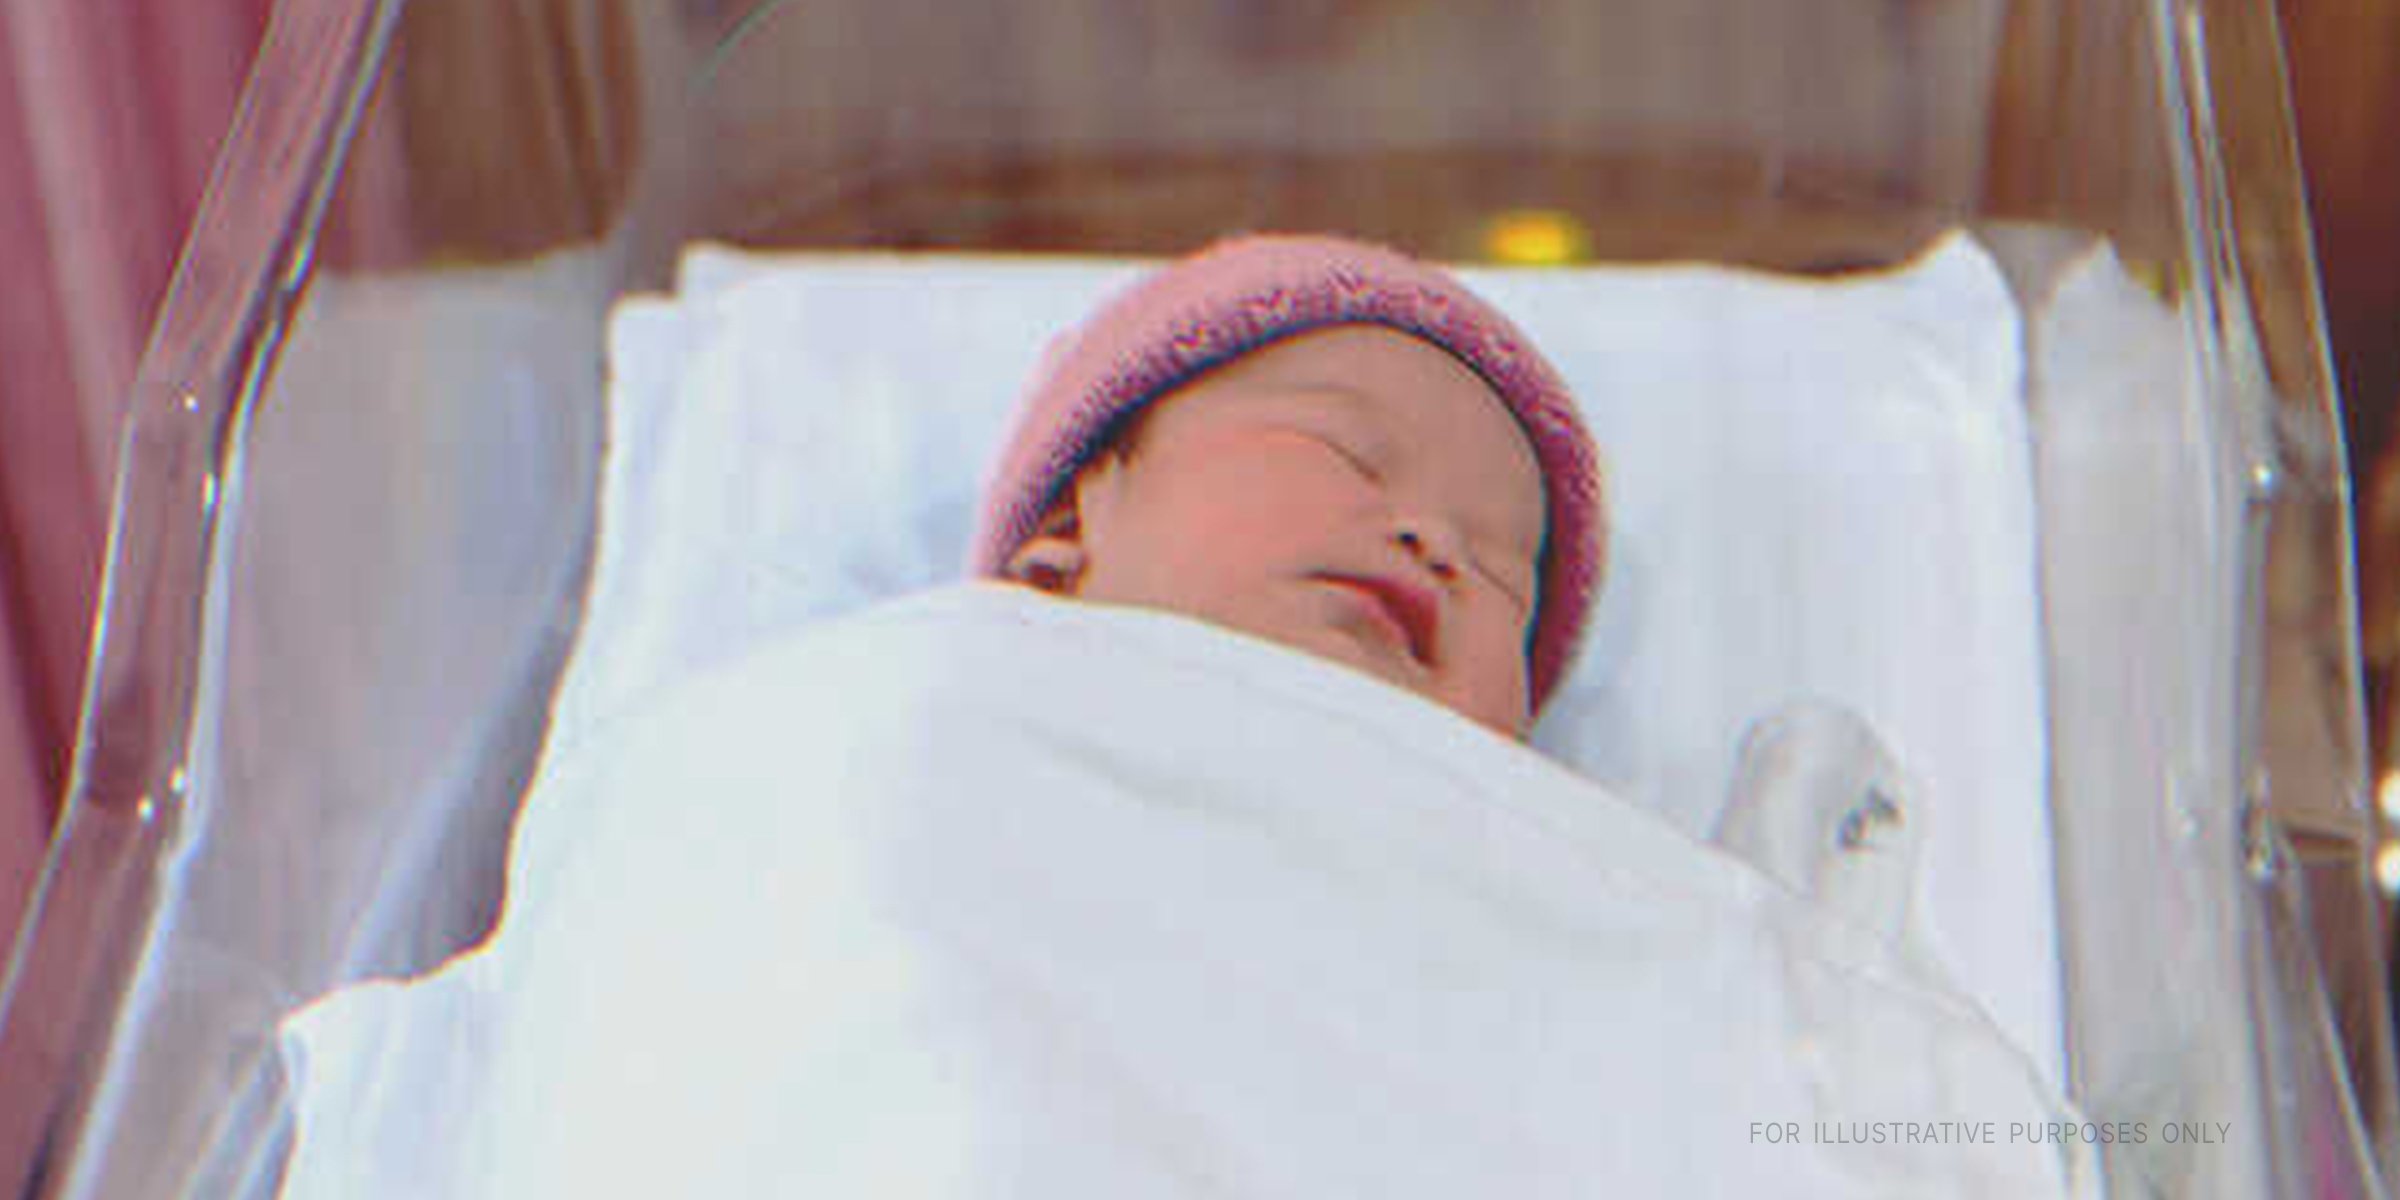 A newborn baby | Source: Shutterstock